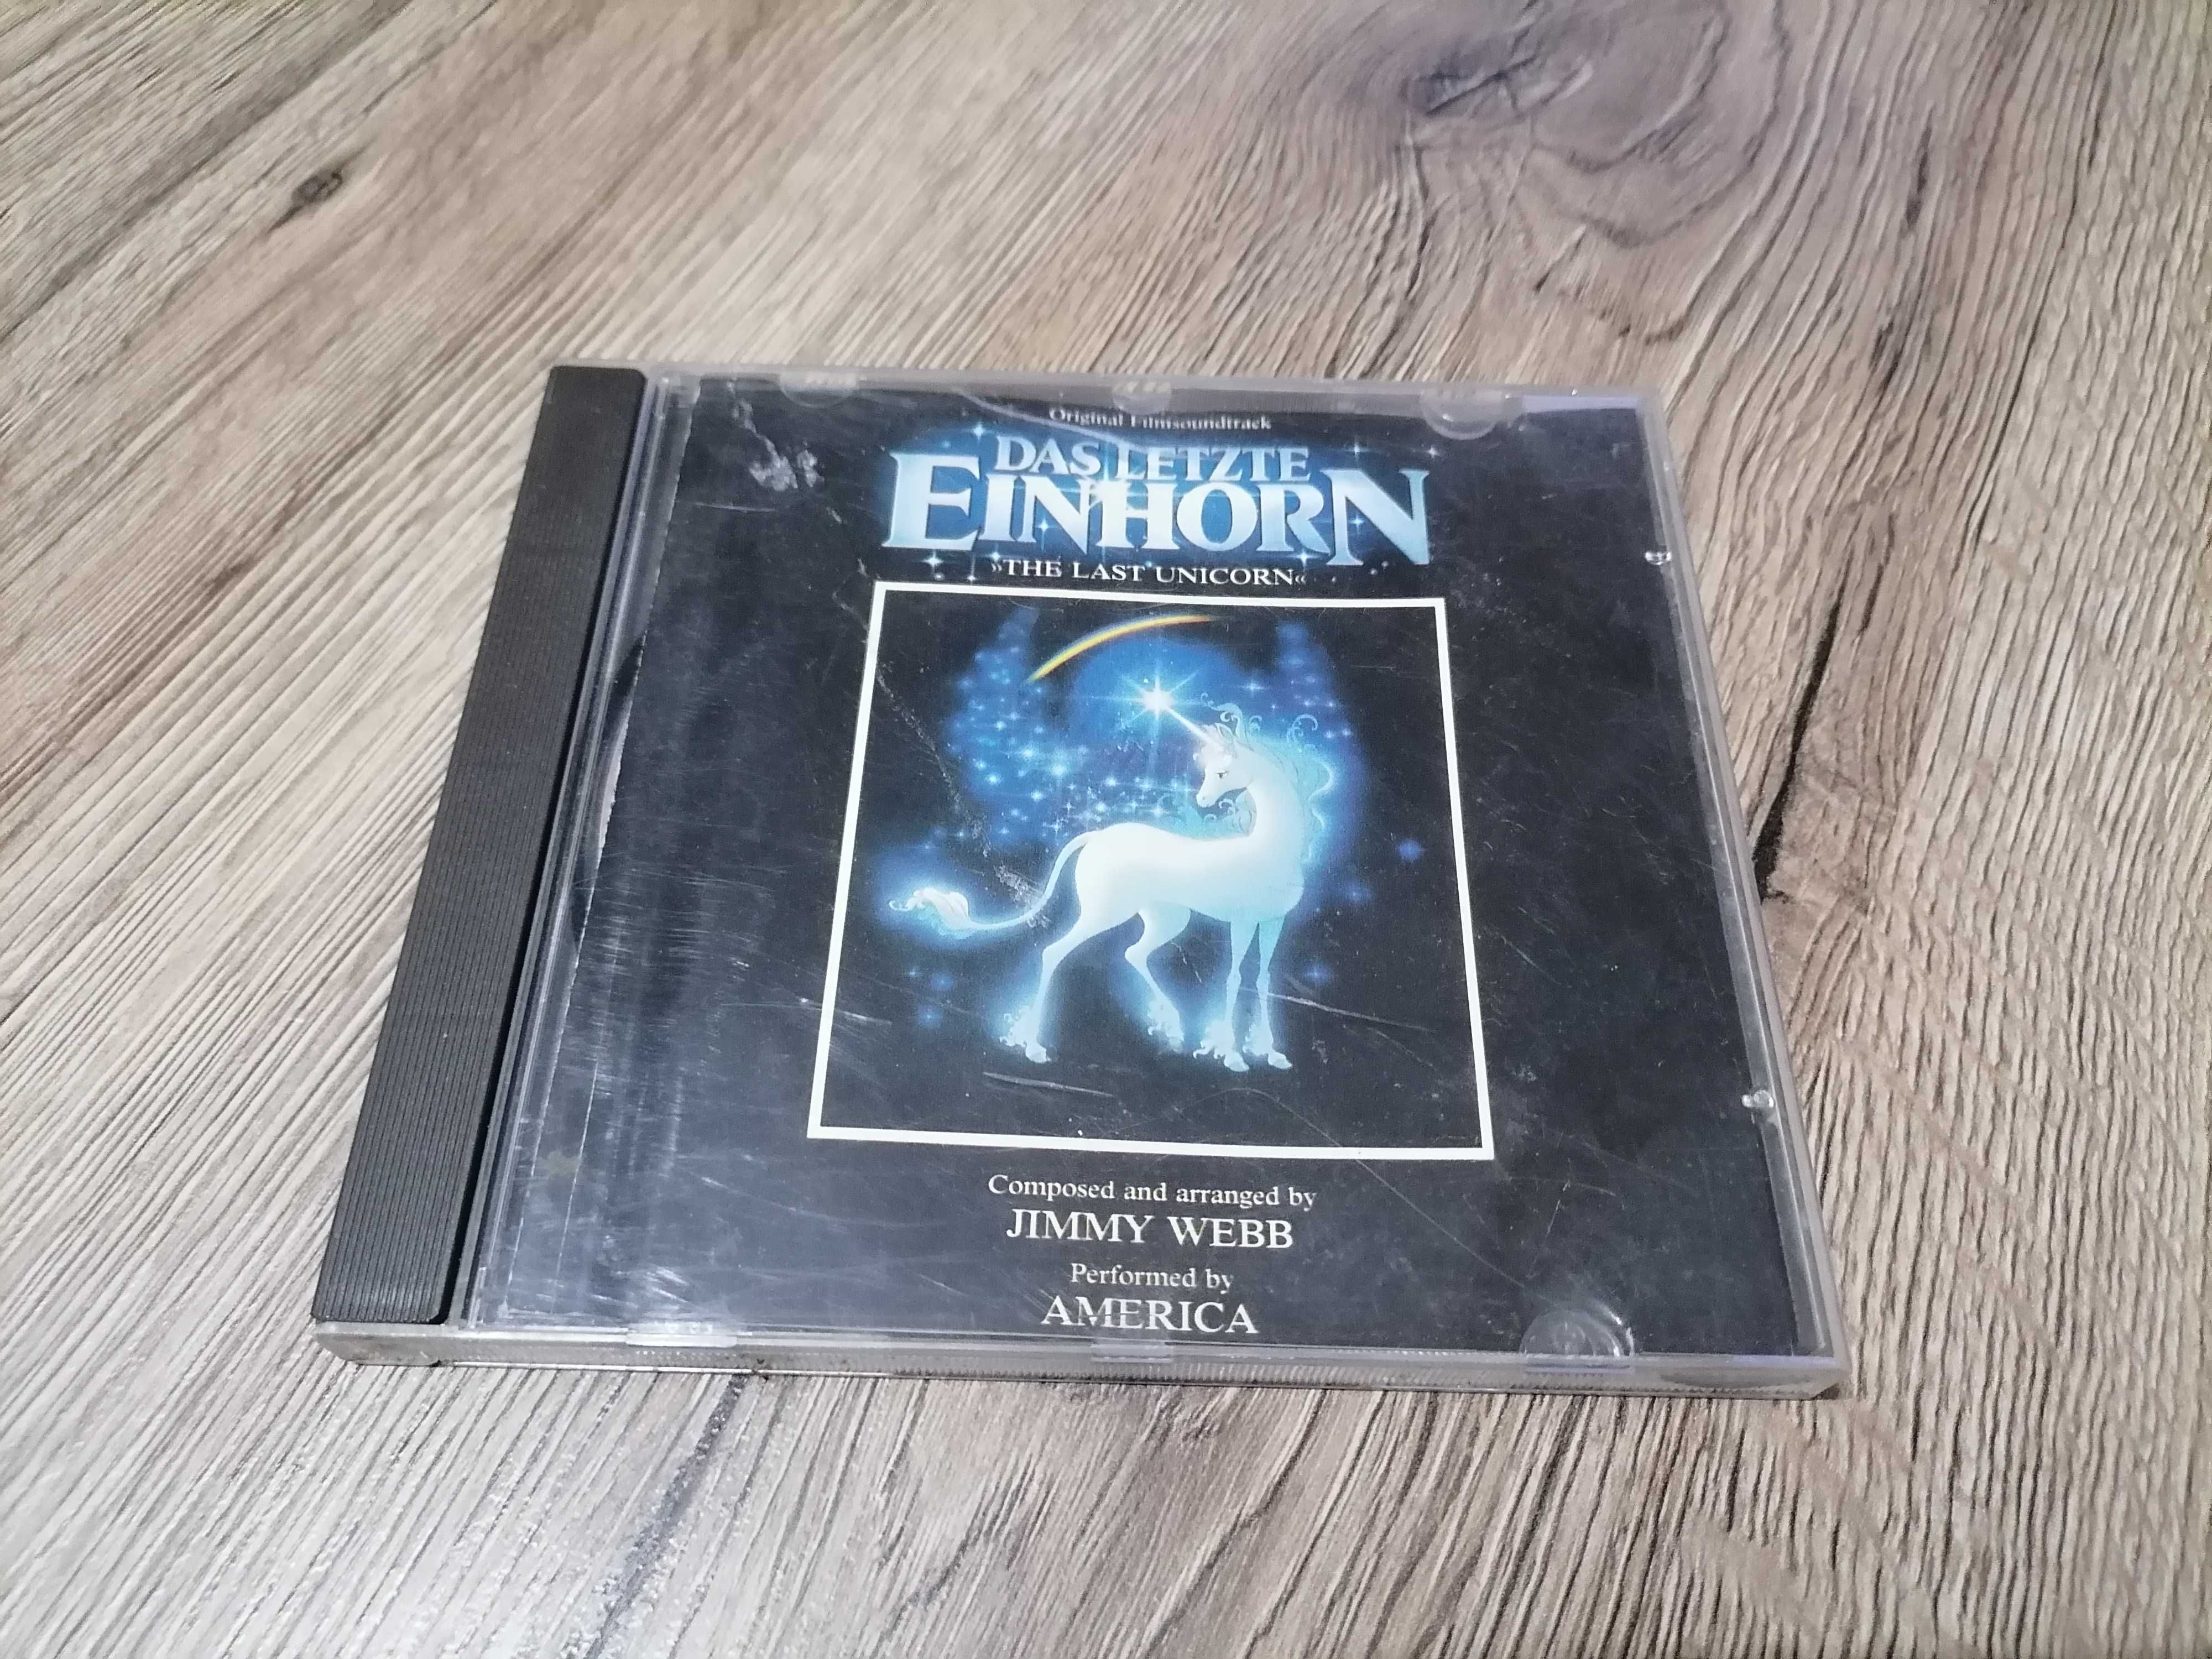 Jimmy Webb – Das Letzte Einhorn (Original Filmsoundtrack) CD